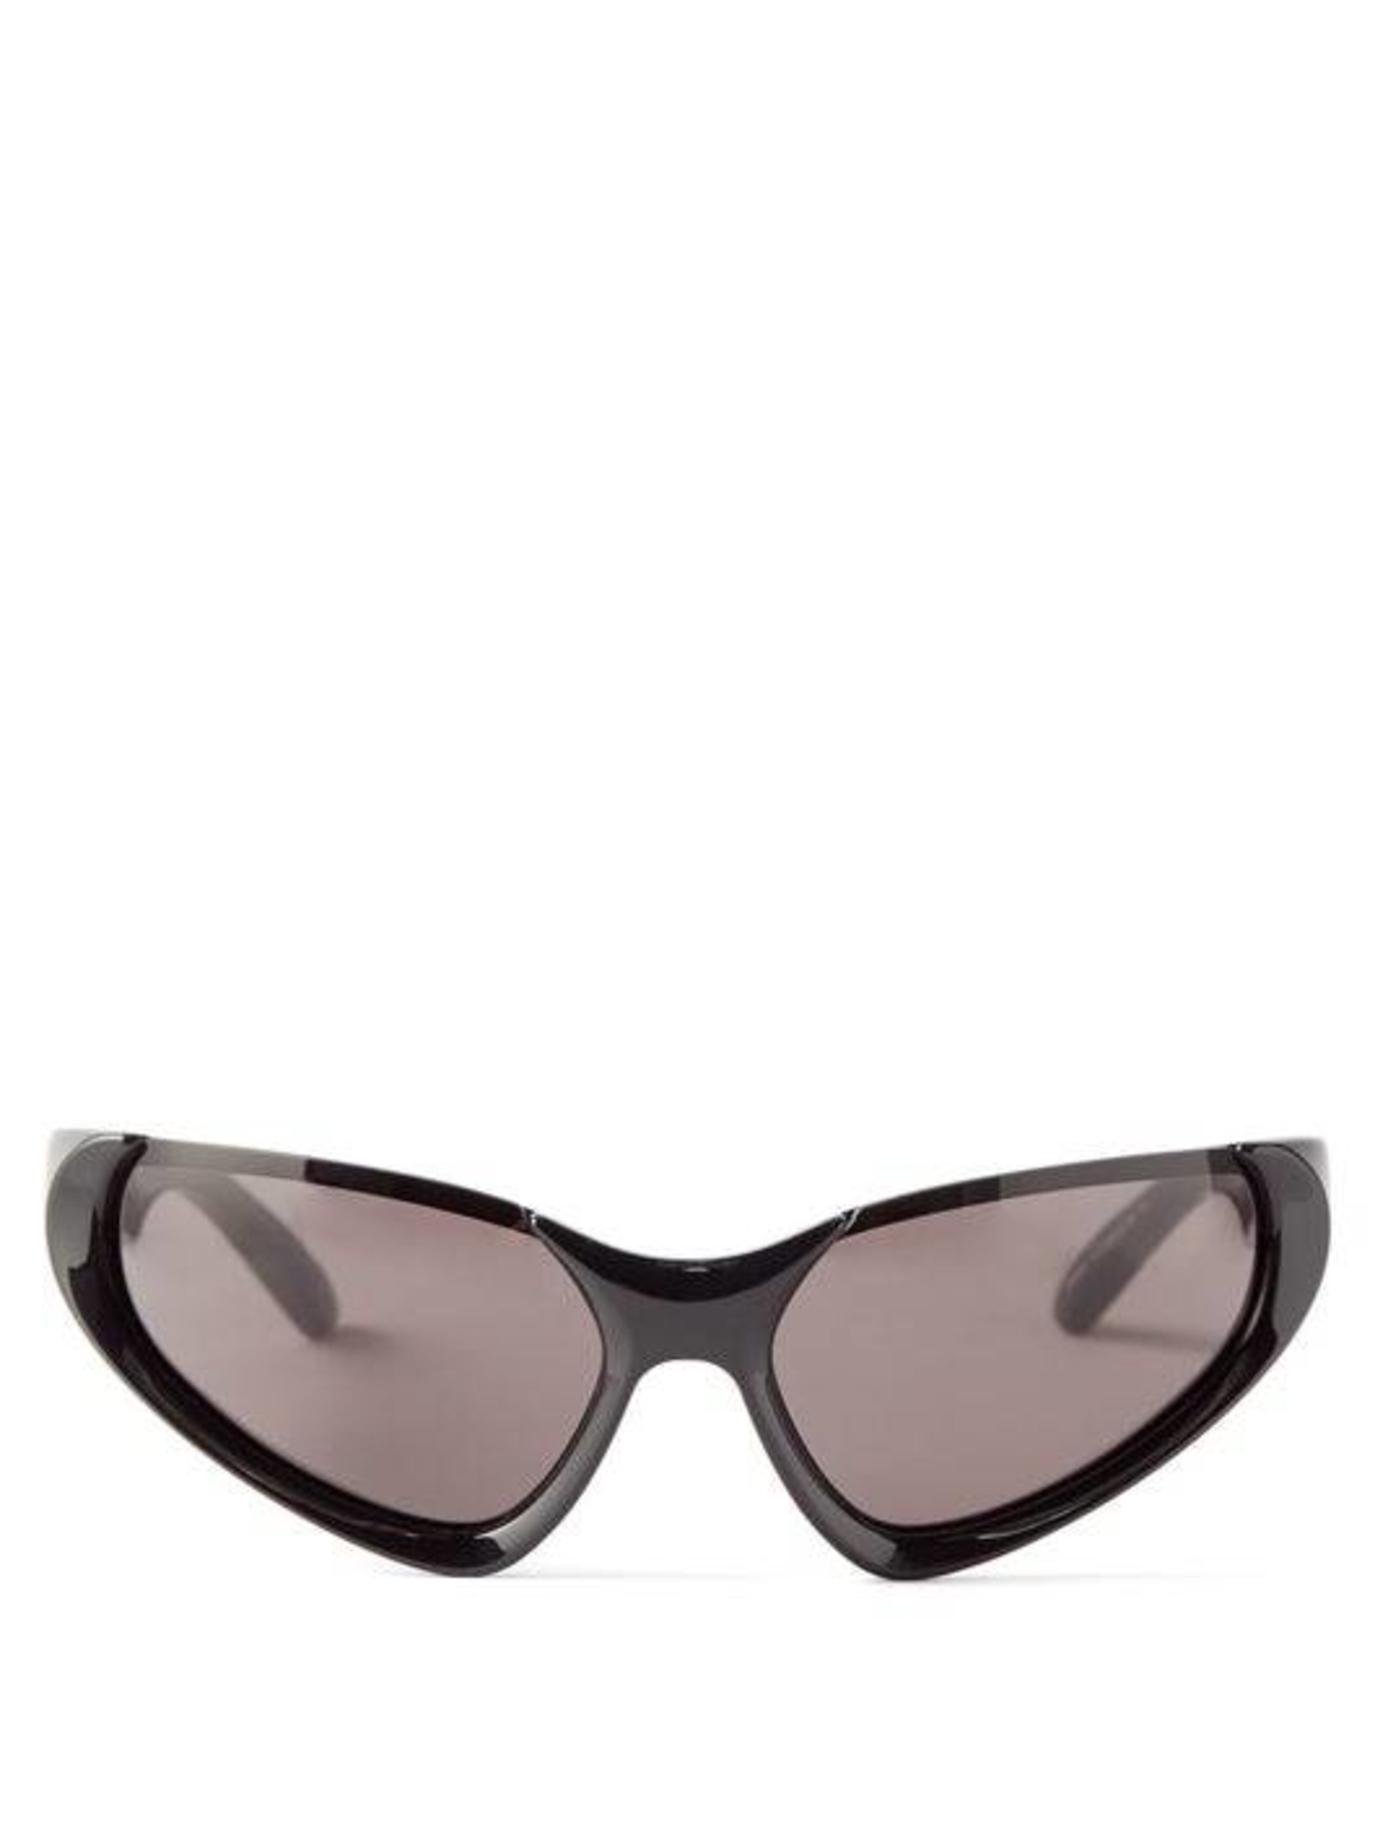 موضة النظارات الشمسية لهذا الصيف Summer Sunglasses-1